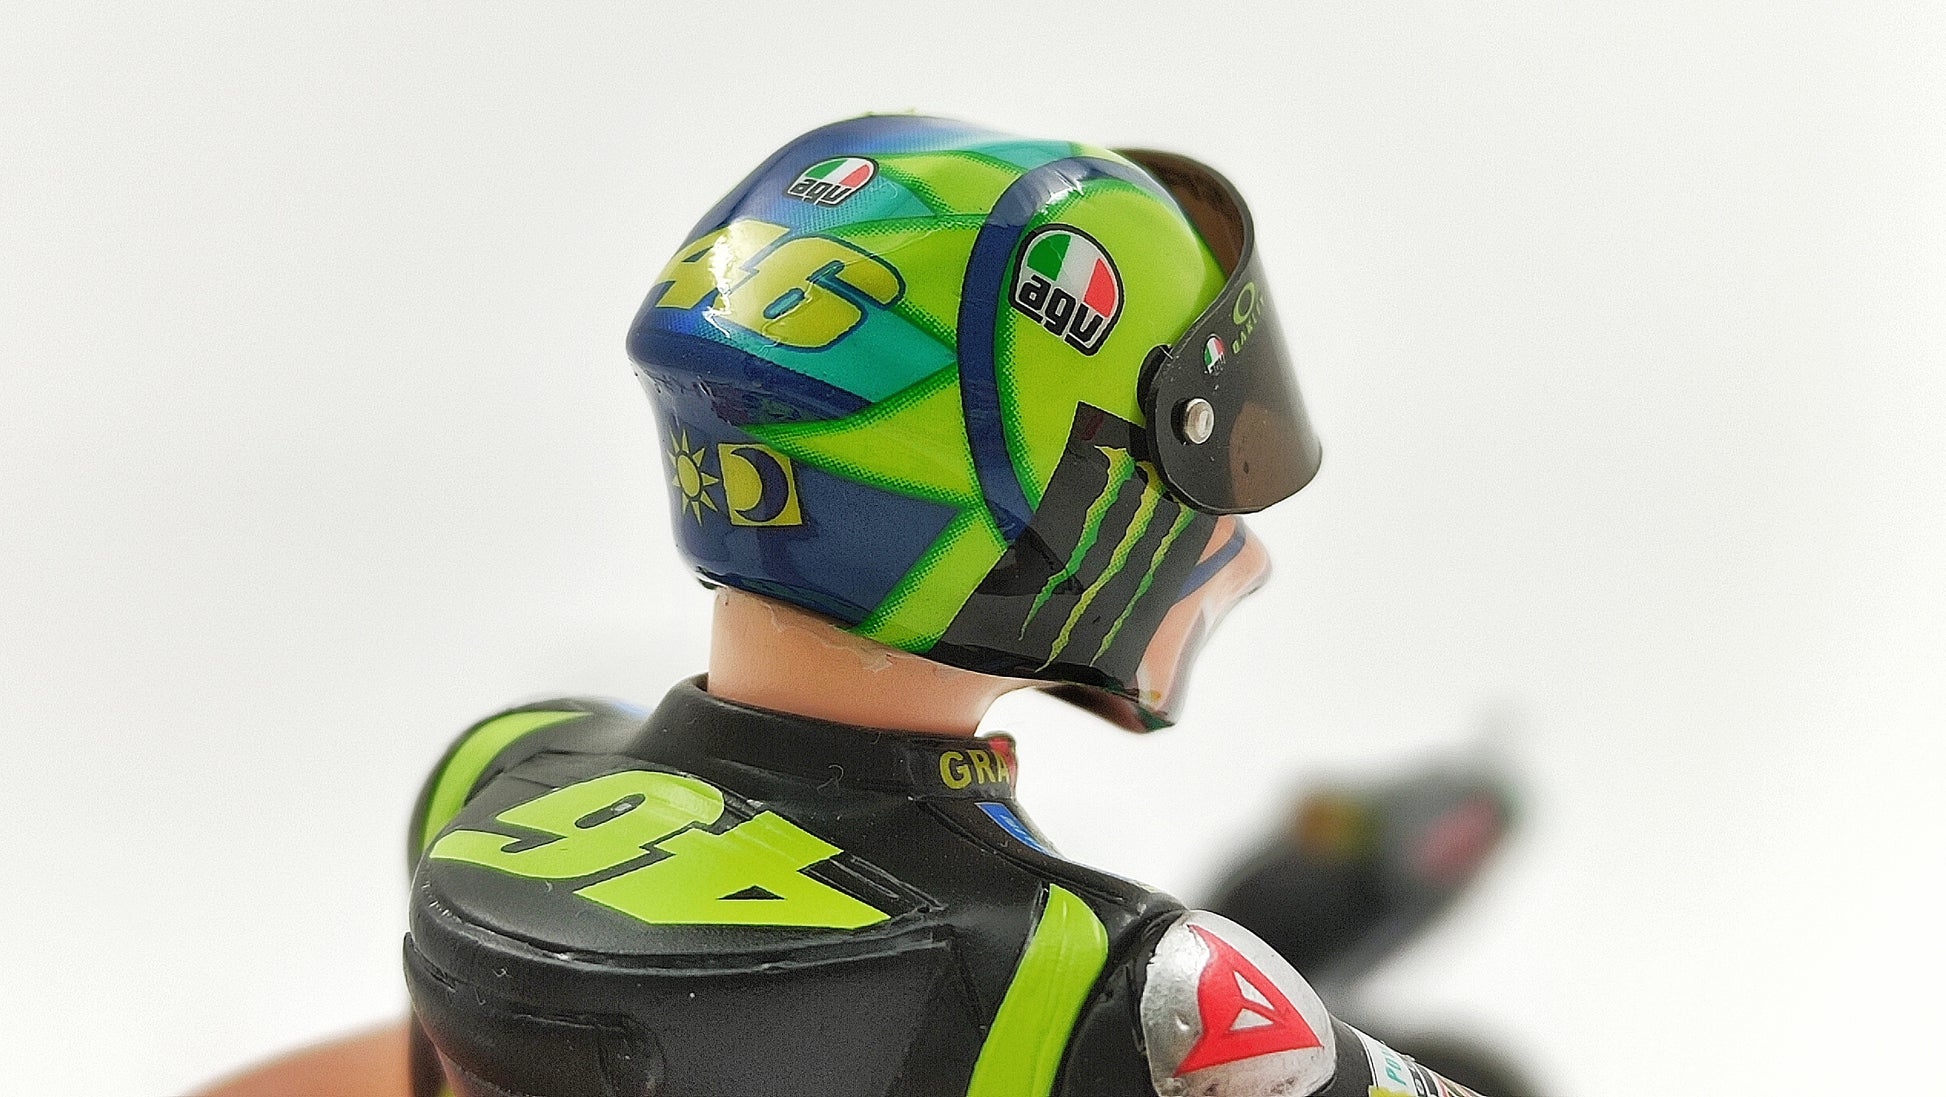 Minichamps Moto GP Figurine Last Ride Valentino Rossi 1/12